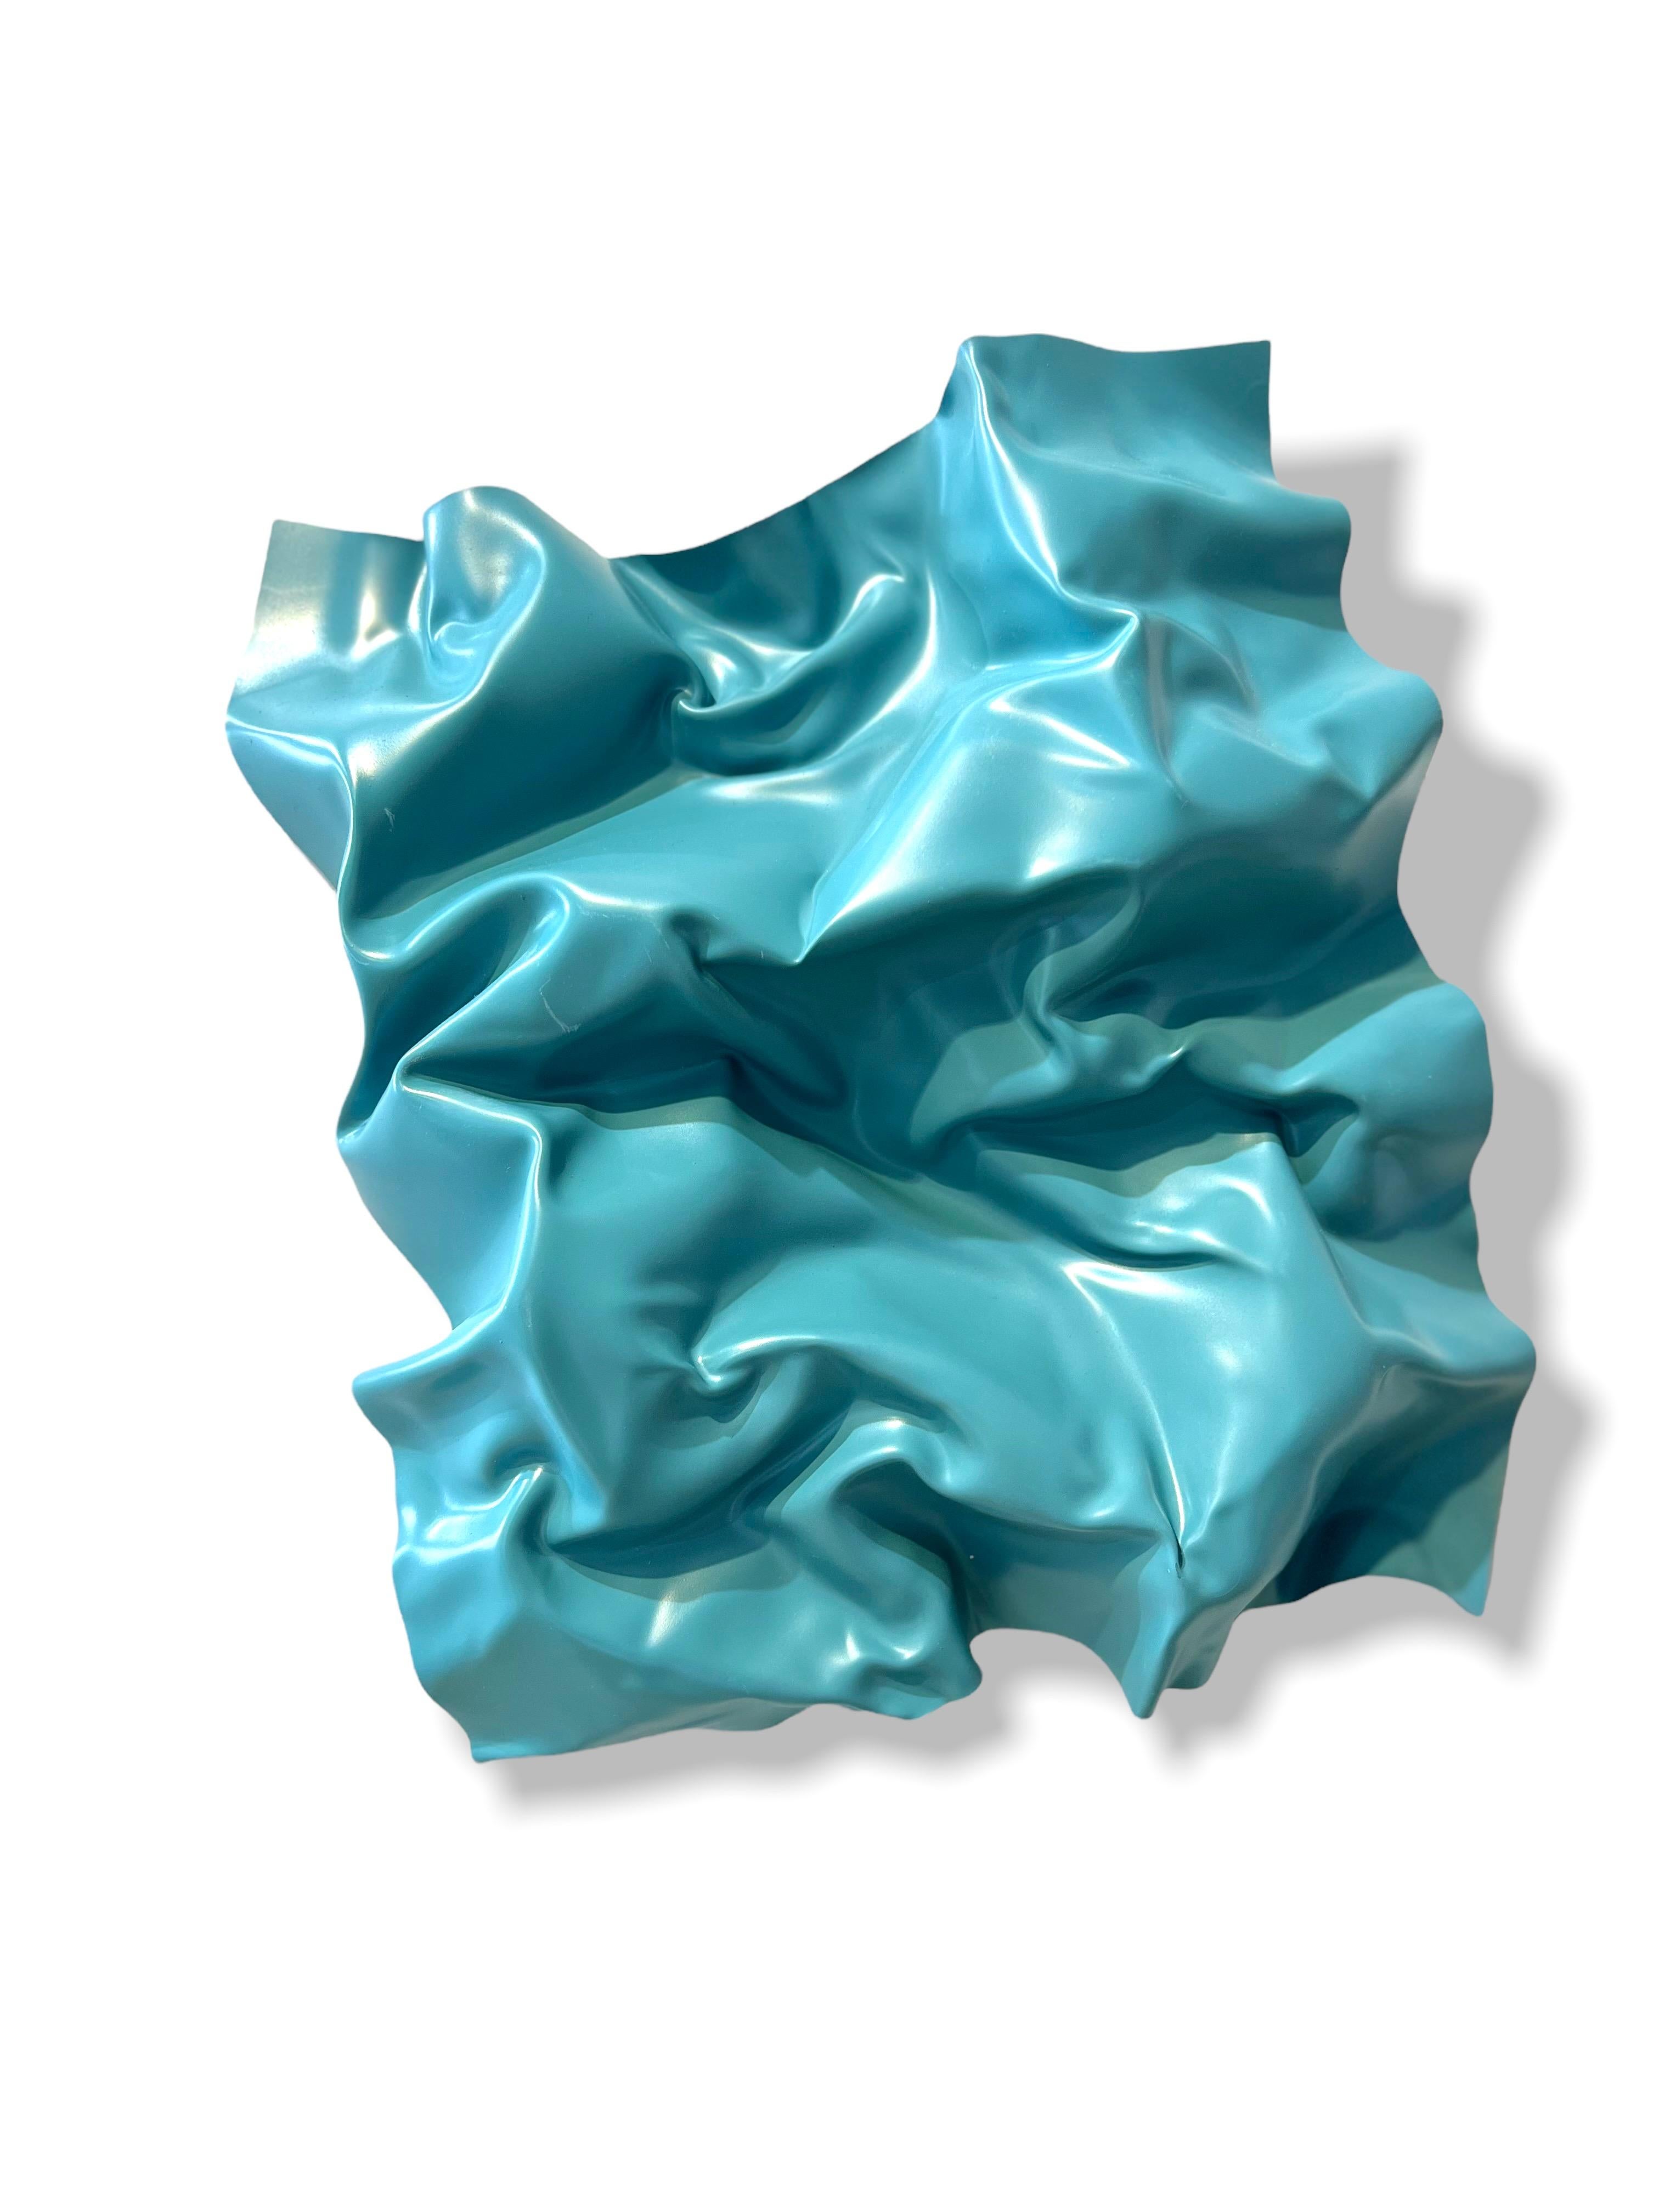 Blue Flying Waves Abstract, Modern, plexiglass, set of Wall Painting Sculptures 2021.
Ces sculptures de petite taille font partie de la série Waves. Ils sont peints avec de la peinture acrylique, de la peinture en aérosol et des pastels. Ils sont